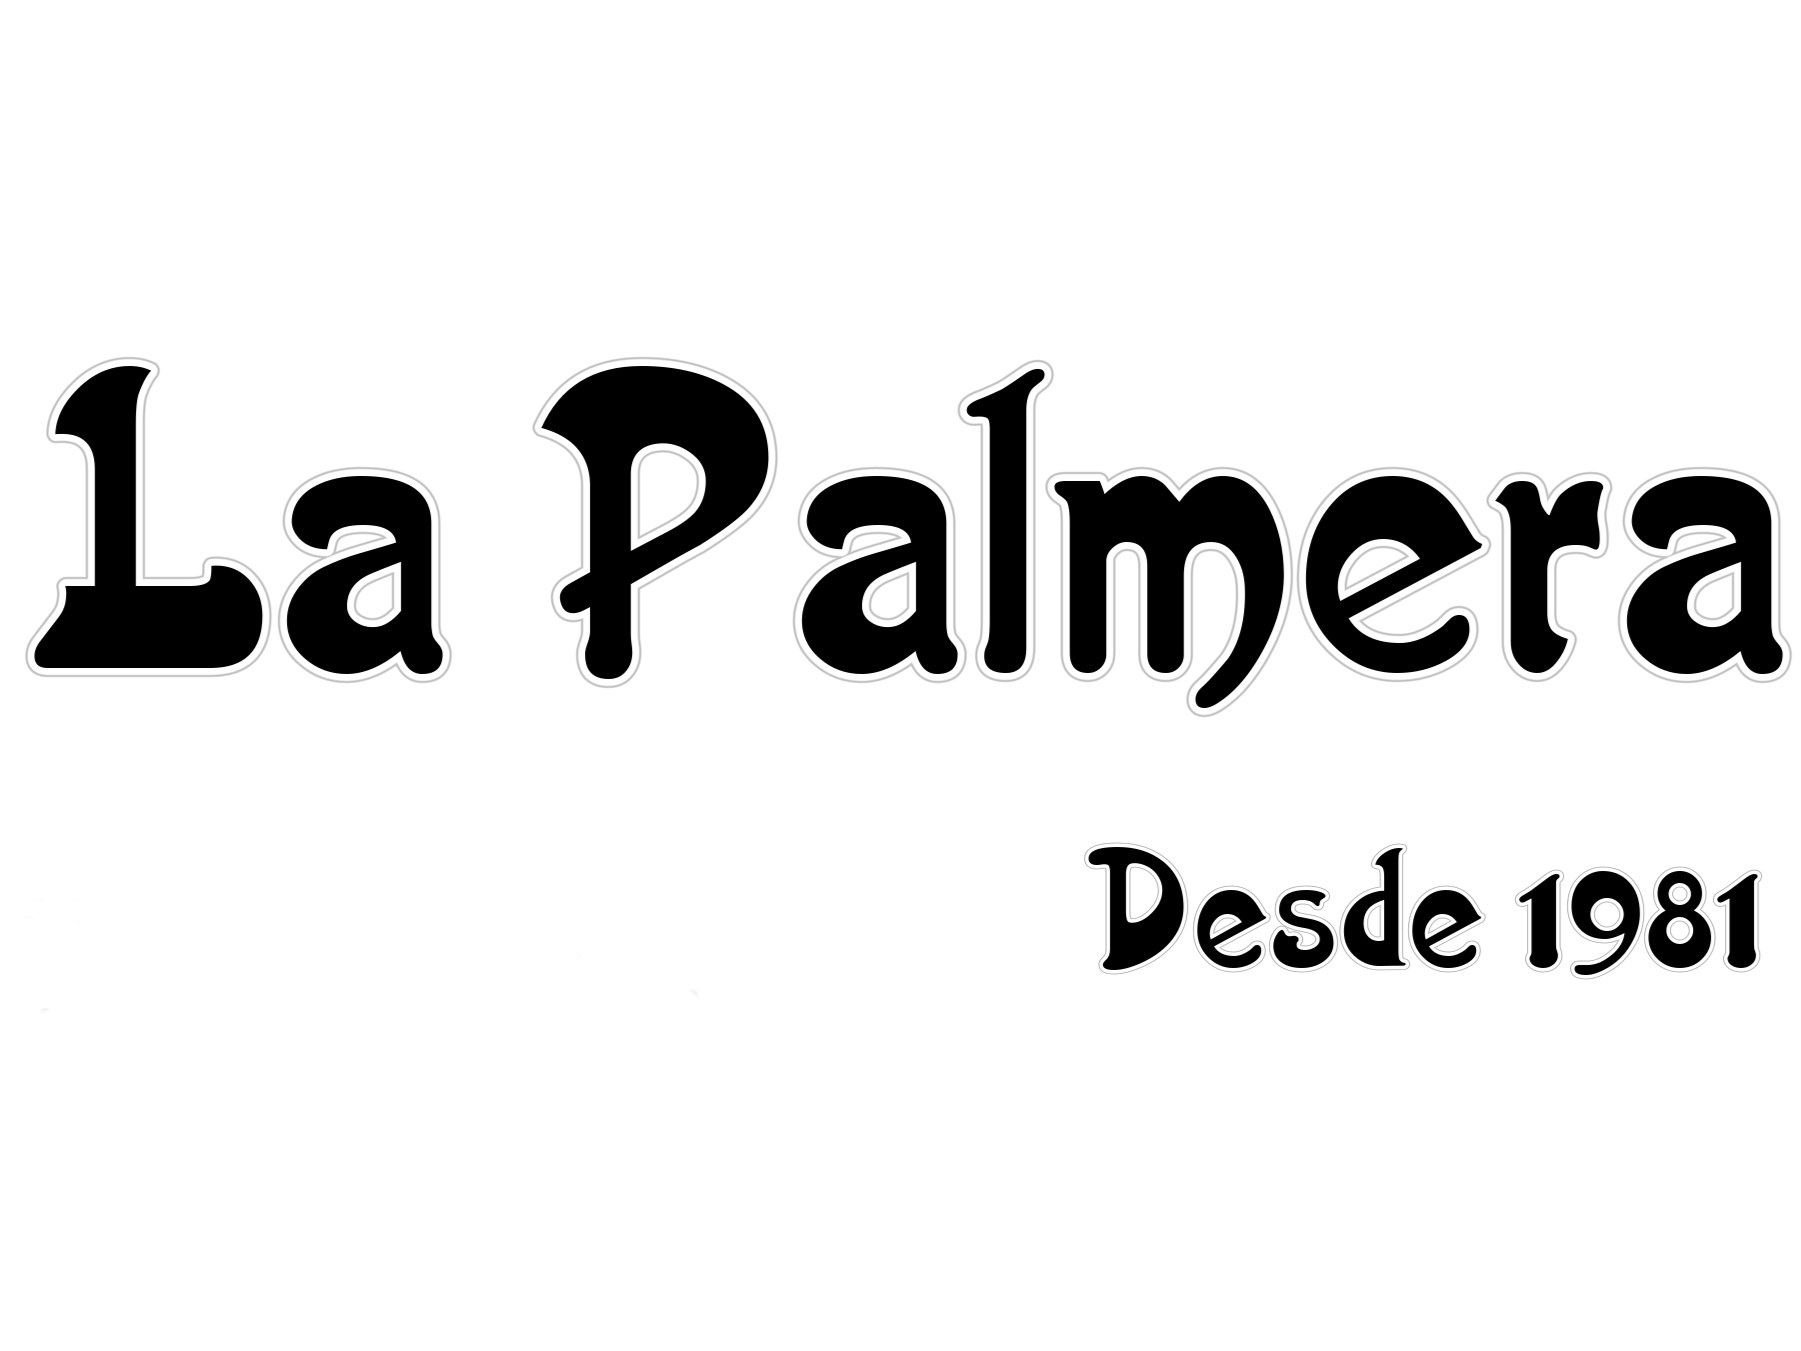 Ver detalles de la Empresa La Palmera desde 1981